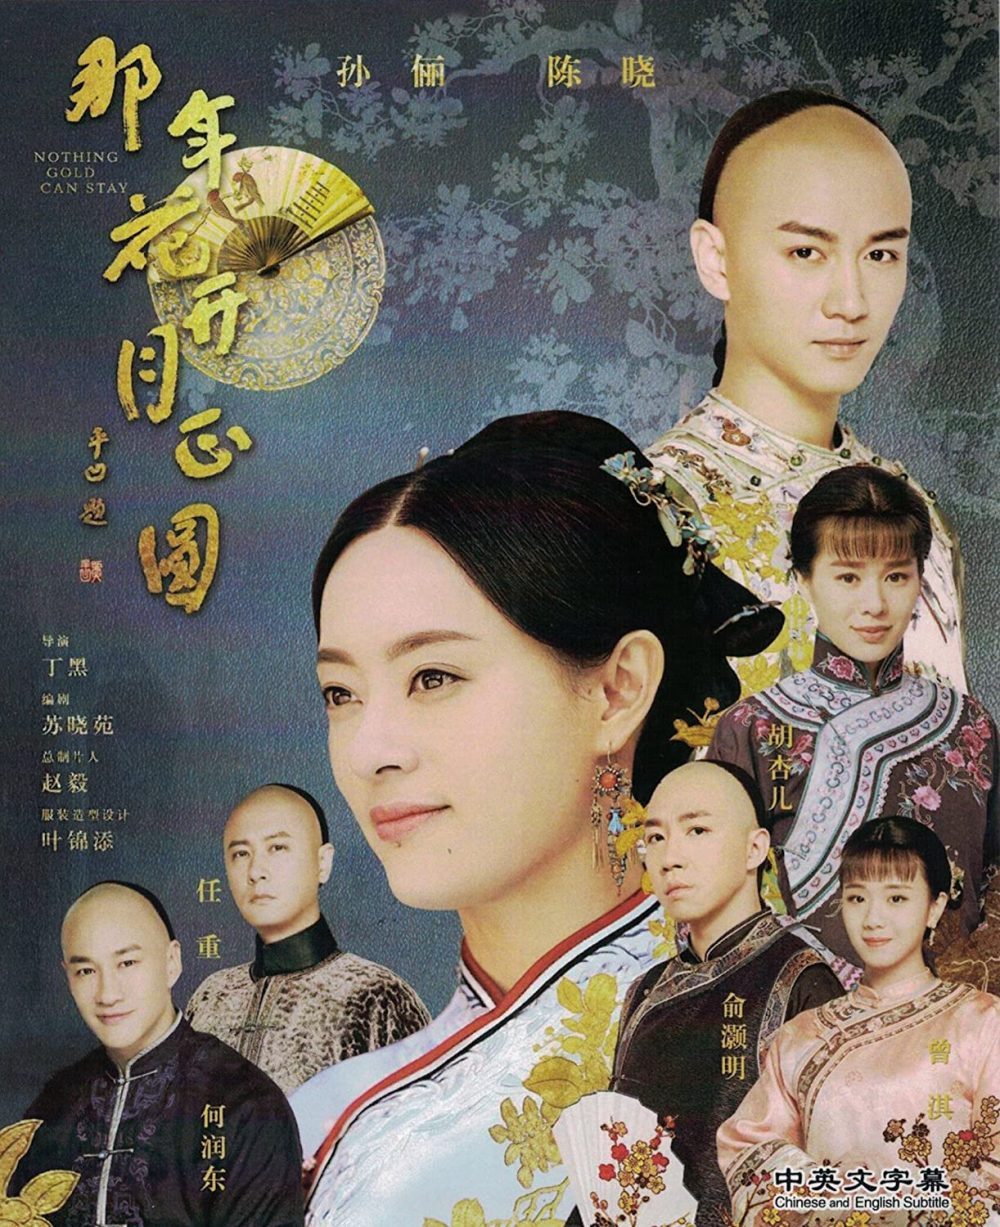 Phim Hà Nhuận Đông: Năm ấy hoa nở trăng vừa tròn - Nothing Gold Can Stay (2017)